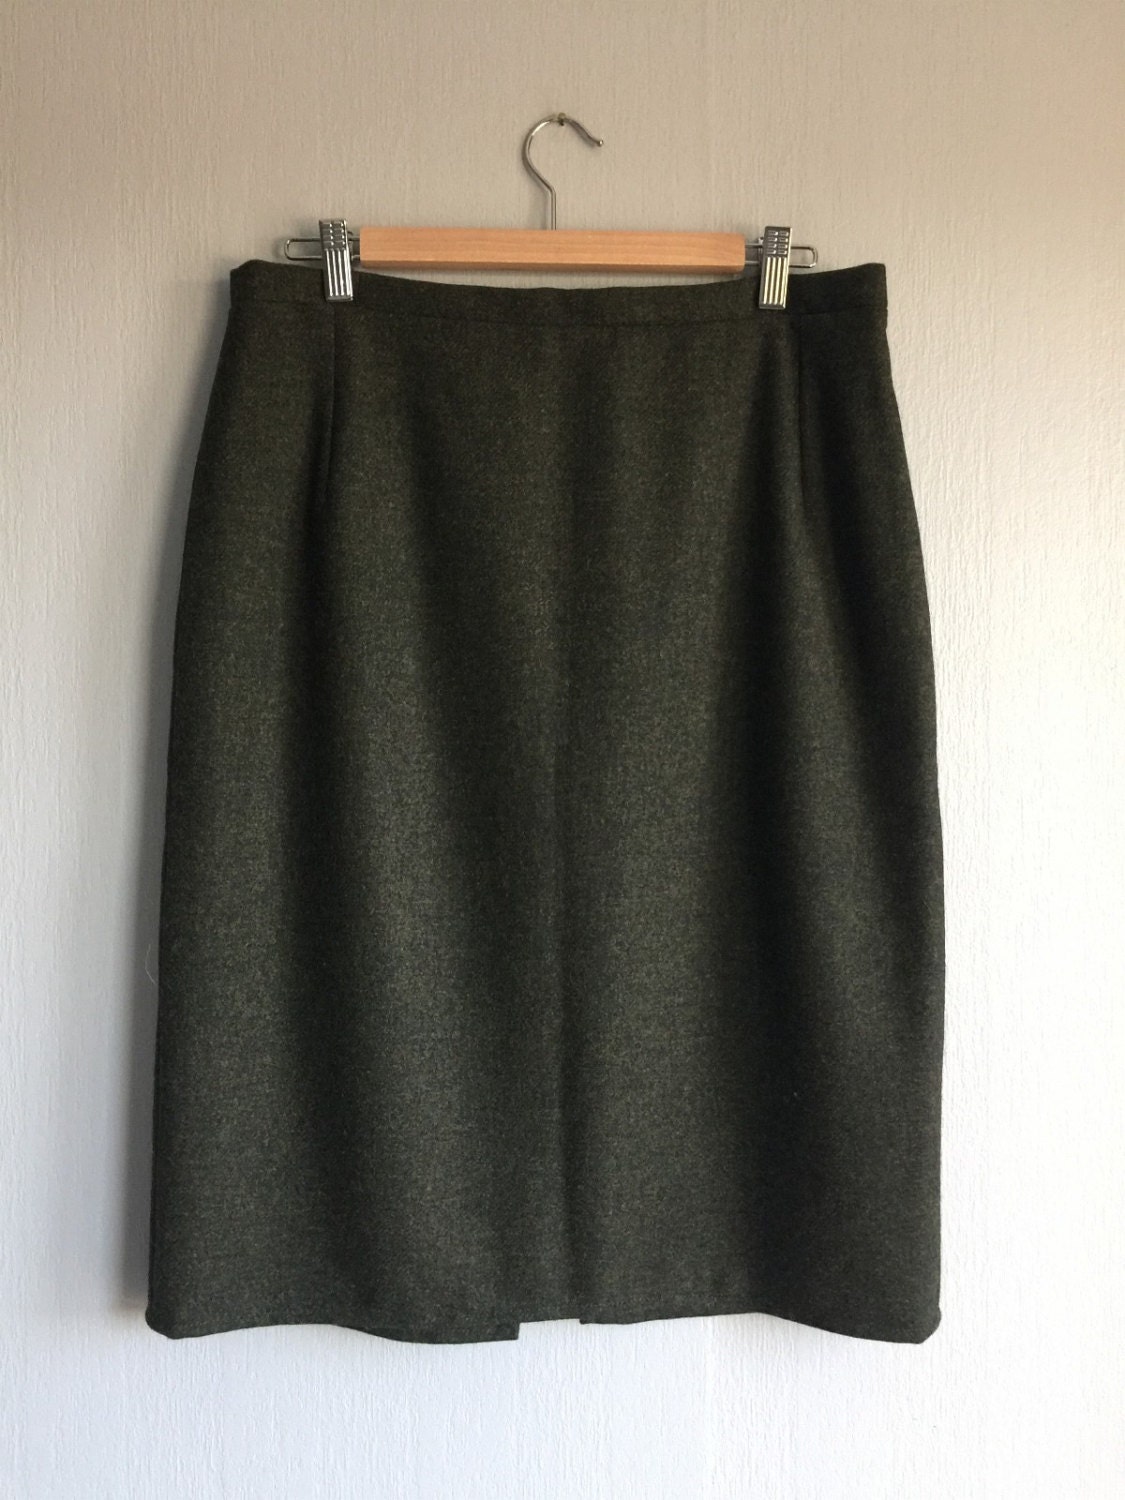 Tweed Pencil Skirt Wool Tweed Skirt Classic Tweed Skirt Green | Etsy